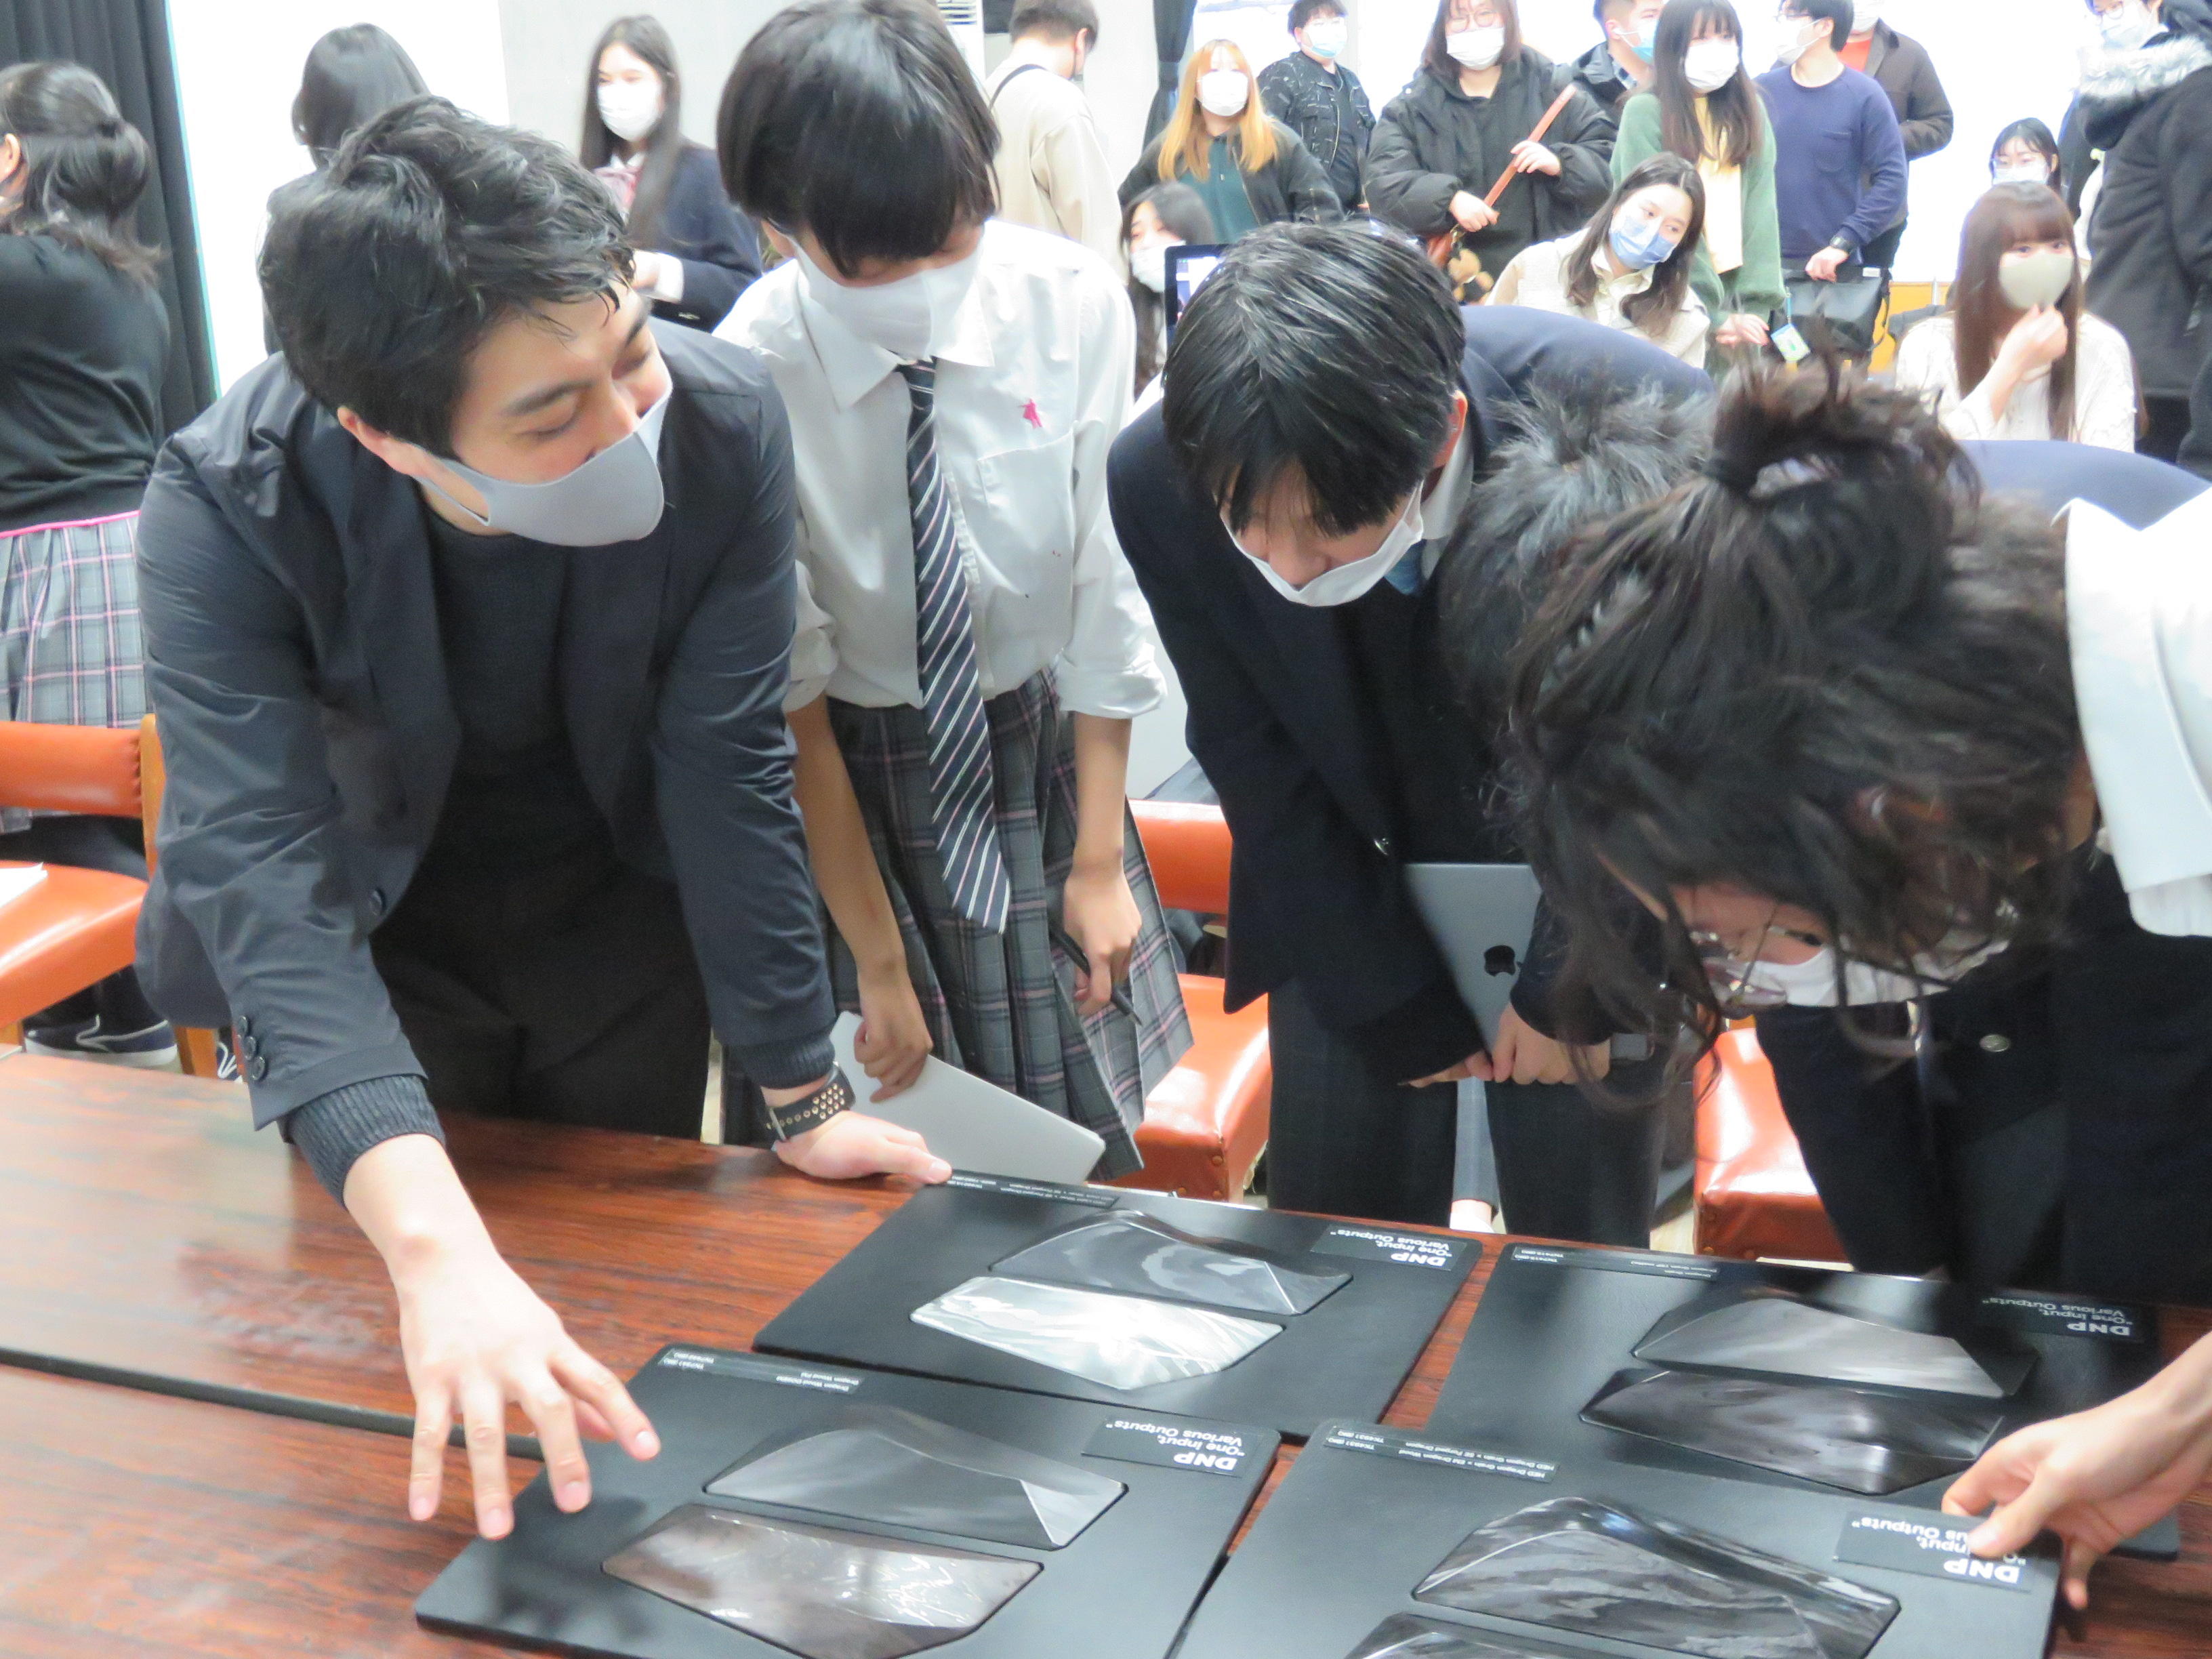 武蔵野学芸専門学校高等課程の産学連携プロジェクトで、大日本印刷のデザイナーが講師を務める特別授業を実施 -- 「アートとデザインの違い」「現代のデザインのミッション」がテーマ